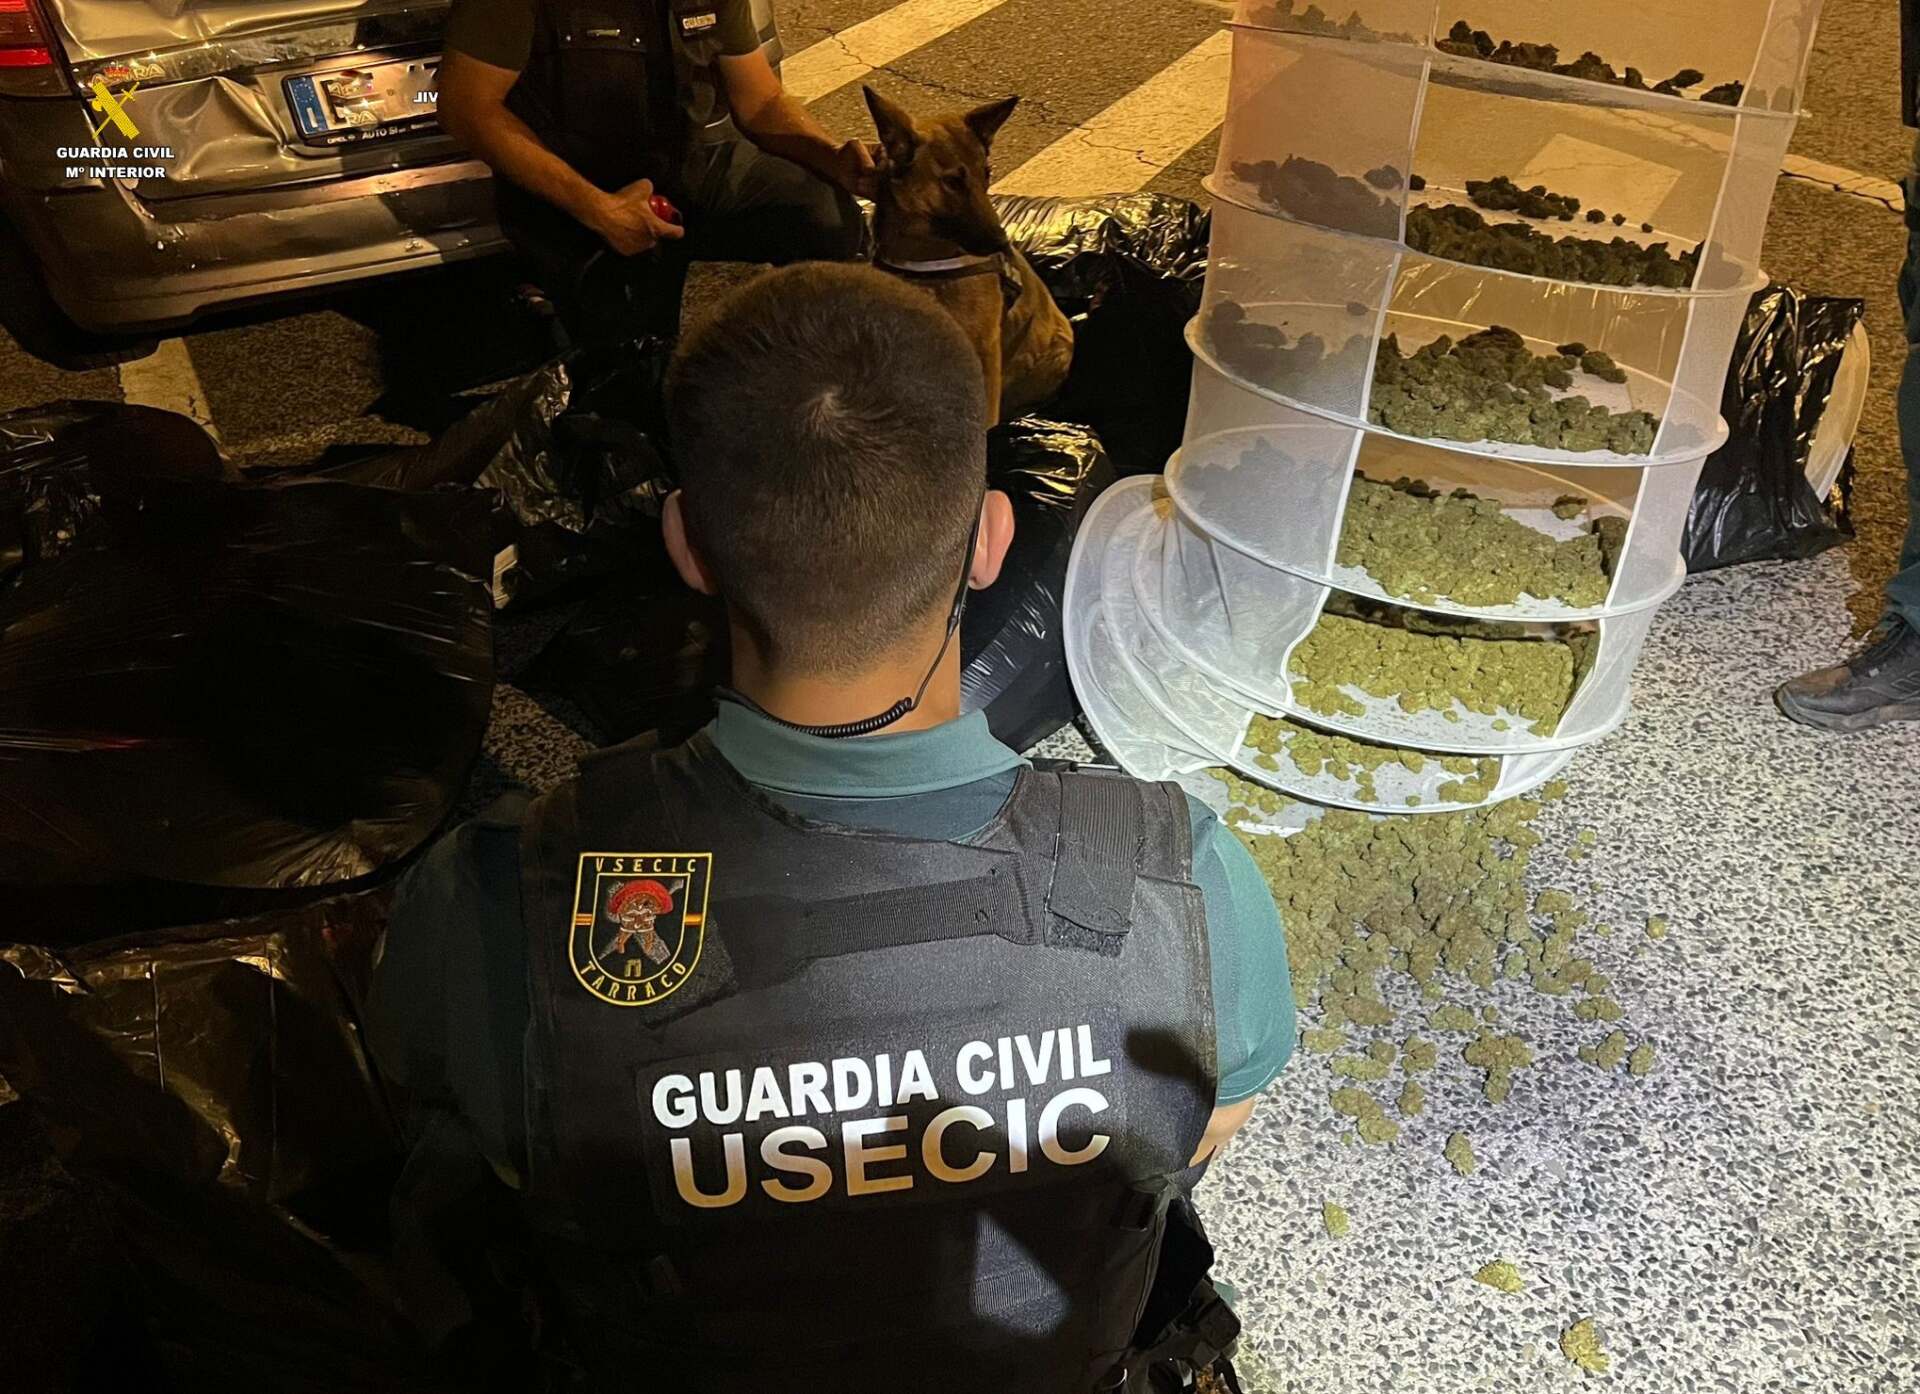 Fotos: Troben més de 20 quilos de marihuana dins d’un cotxe en un control a Catalunya